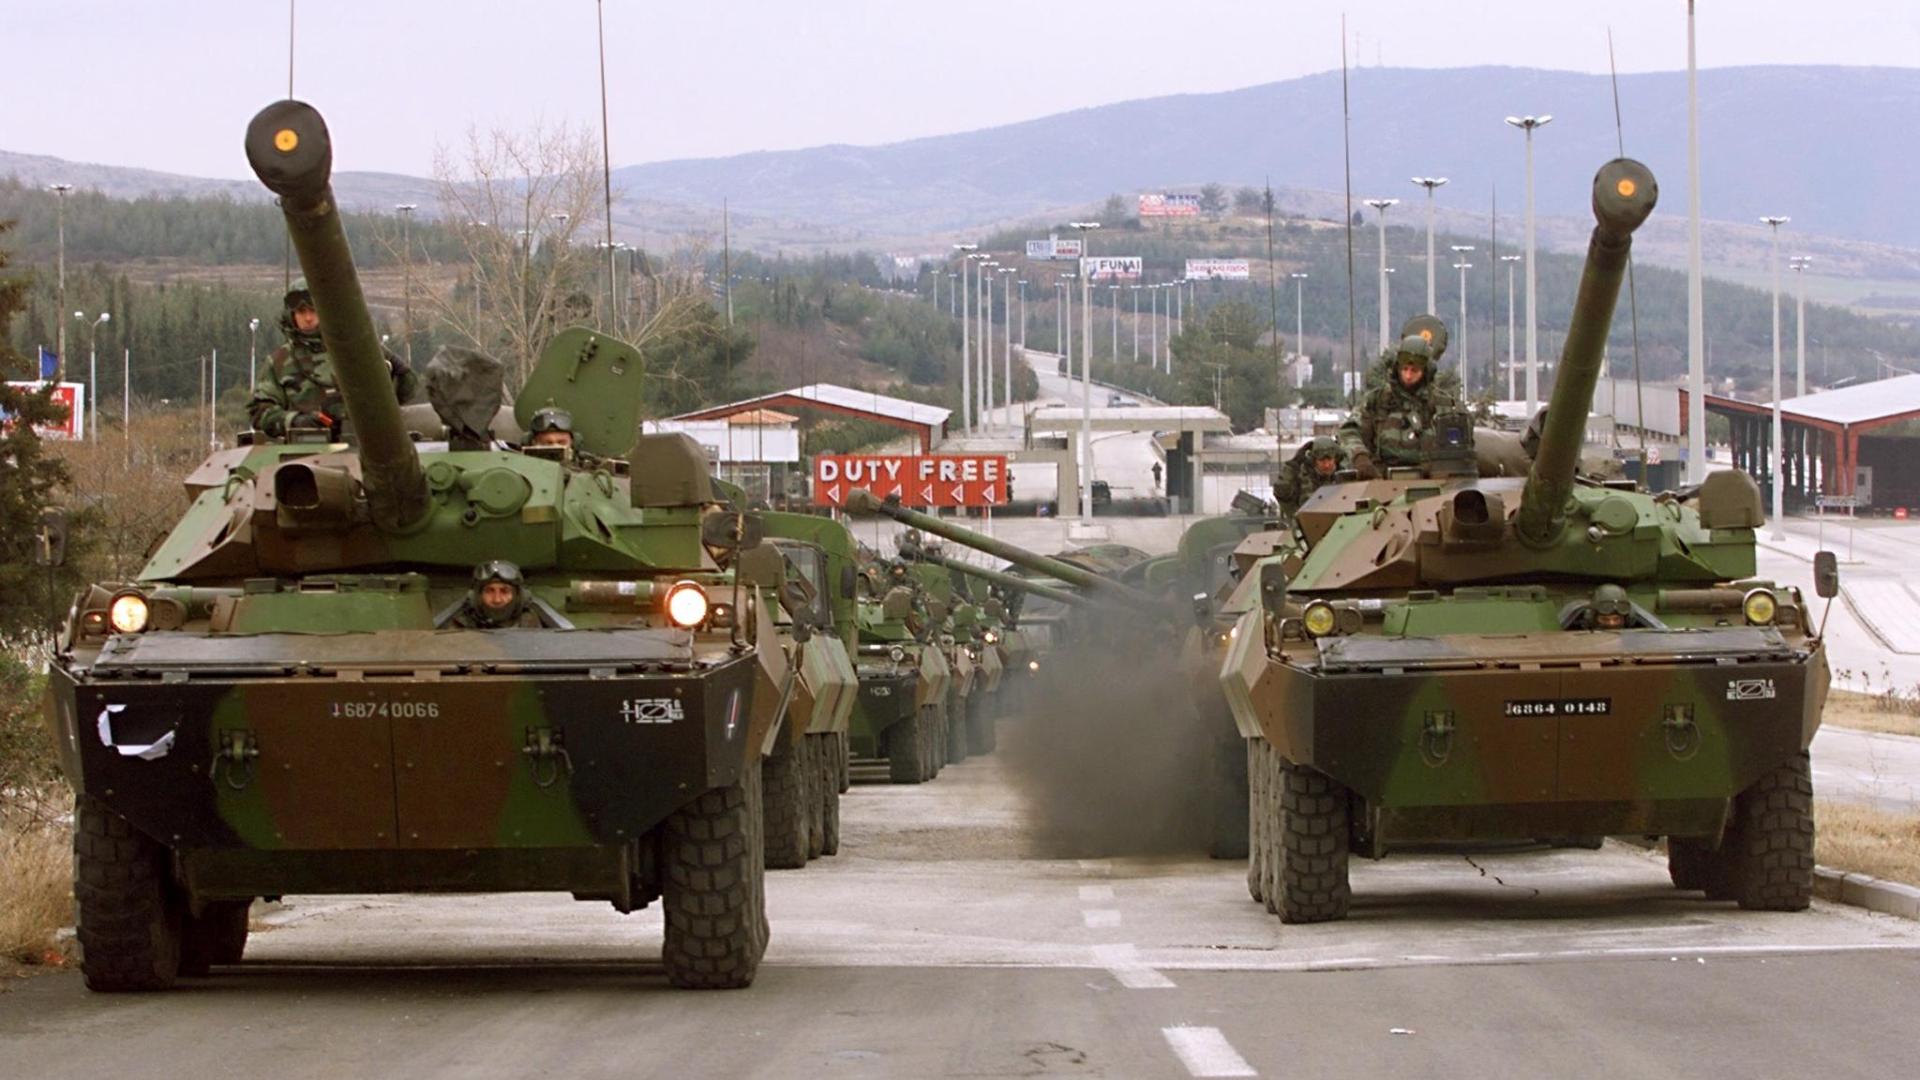 Ukraine To Get Armoured Combat Vehicles From West, Asks For Tanks | Russia- Ukraine War News | Al Jazeera